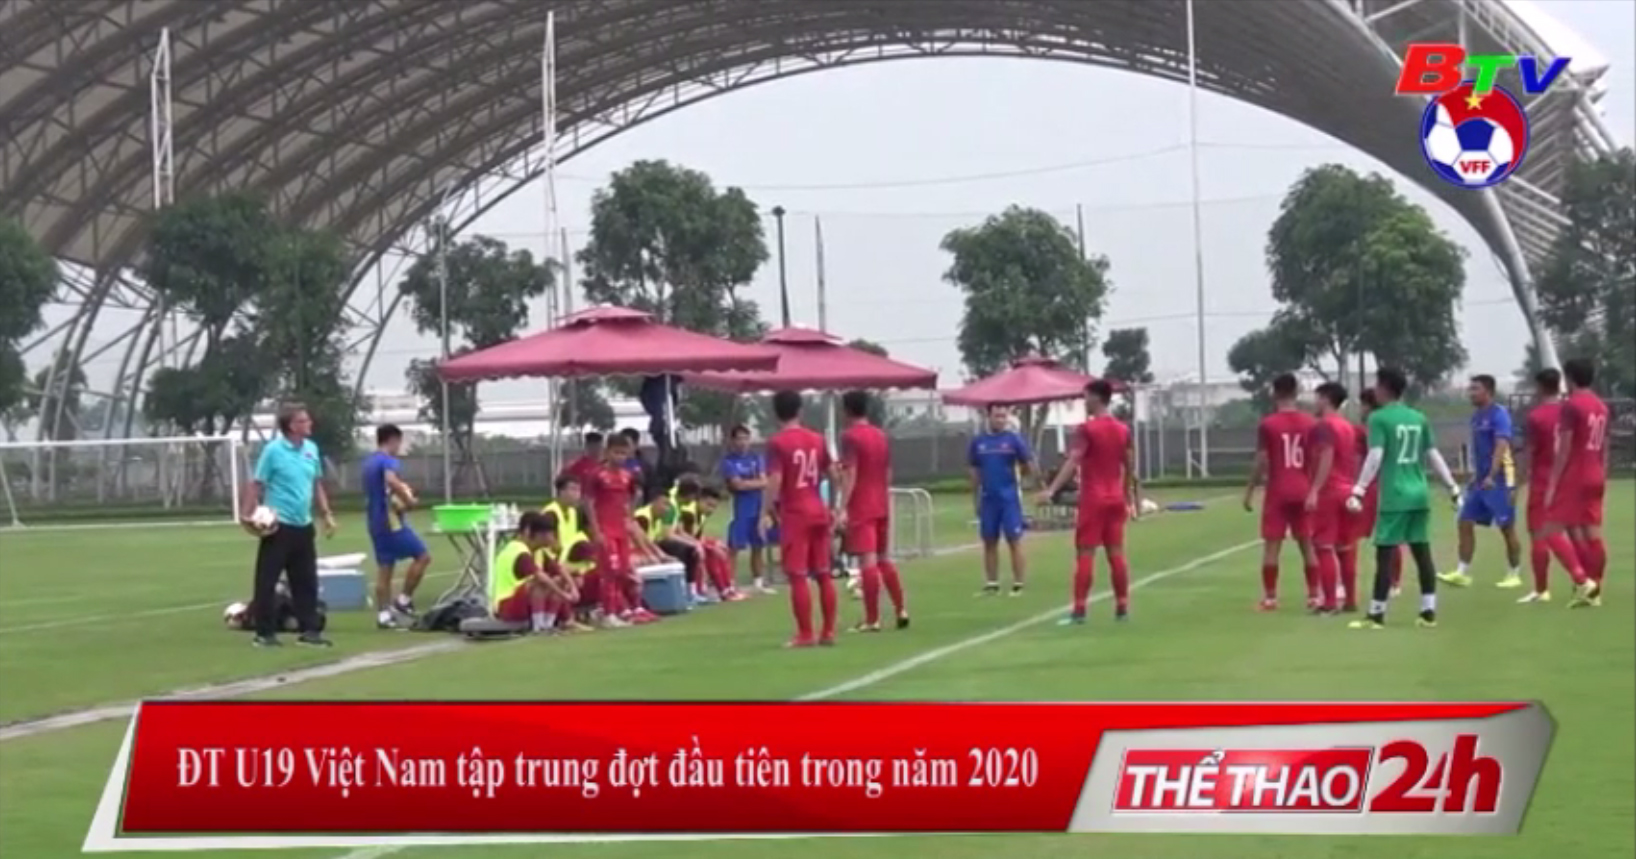 ĐT U19 Việt Nam tập trung đợt đầu tiên trong năm 2020